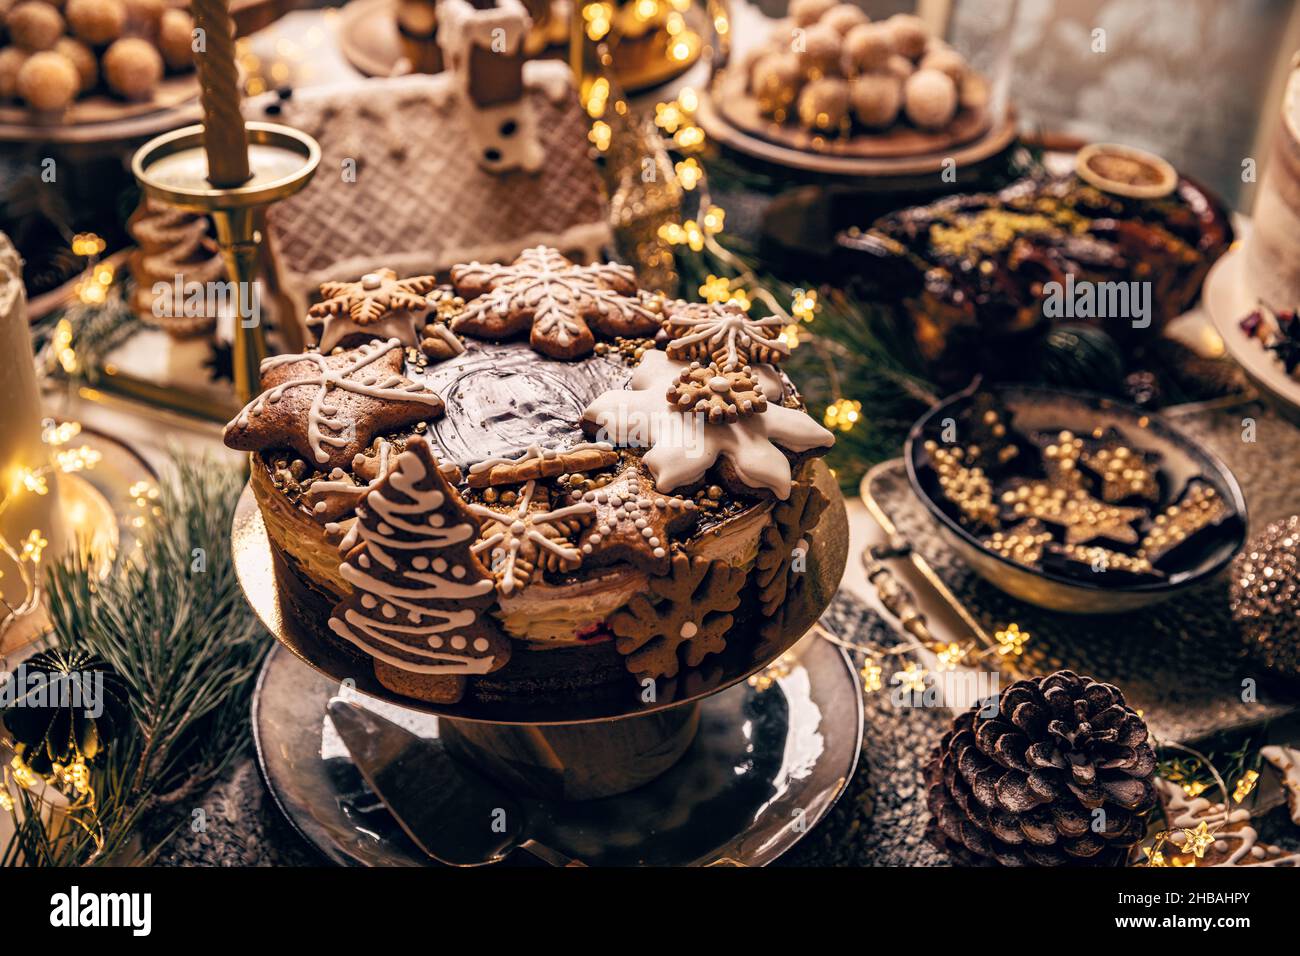 Table de fantaisie avec desserts de Noël, gâteau de pain d'épice, chocolat Banque D'Images